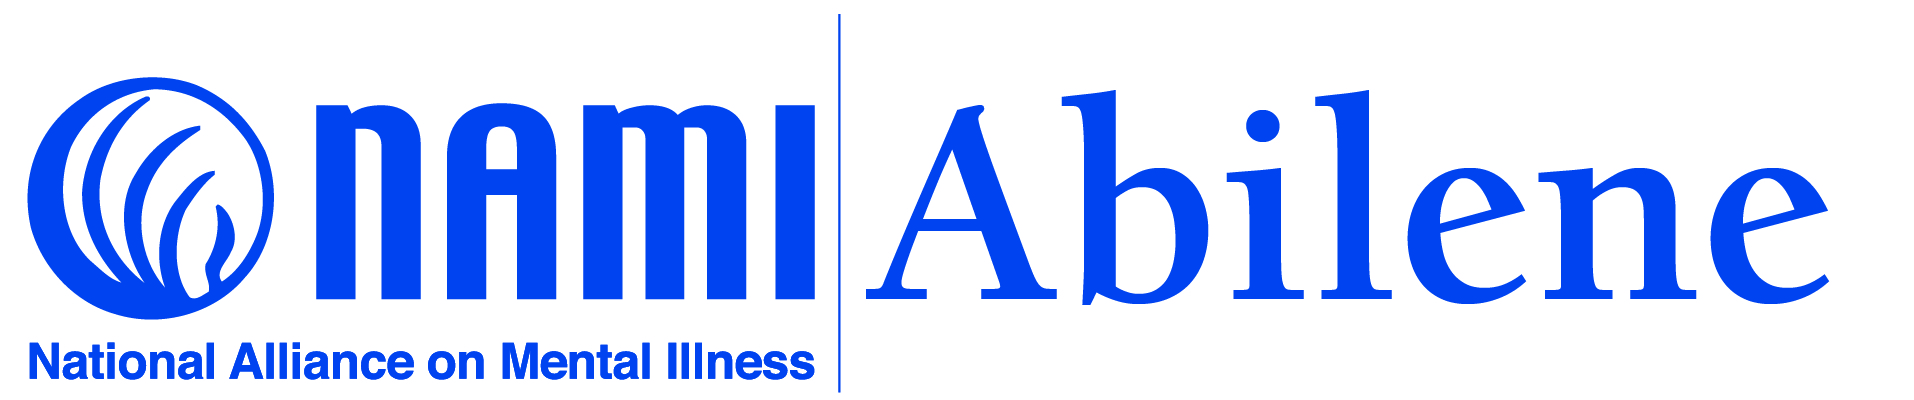 National Alliance on Mental Illness Abilene logo